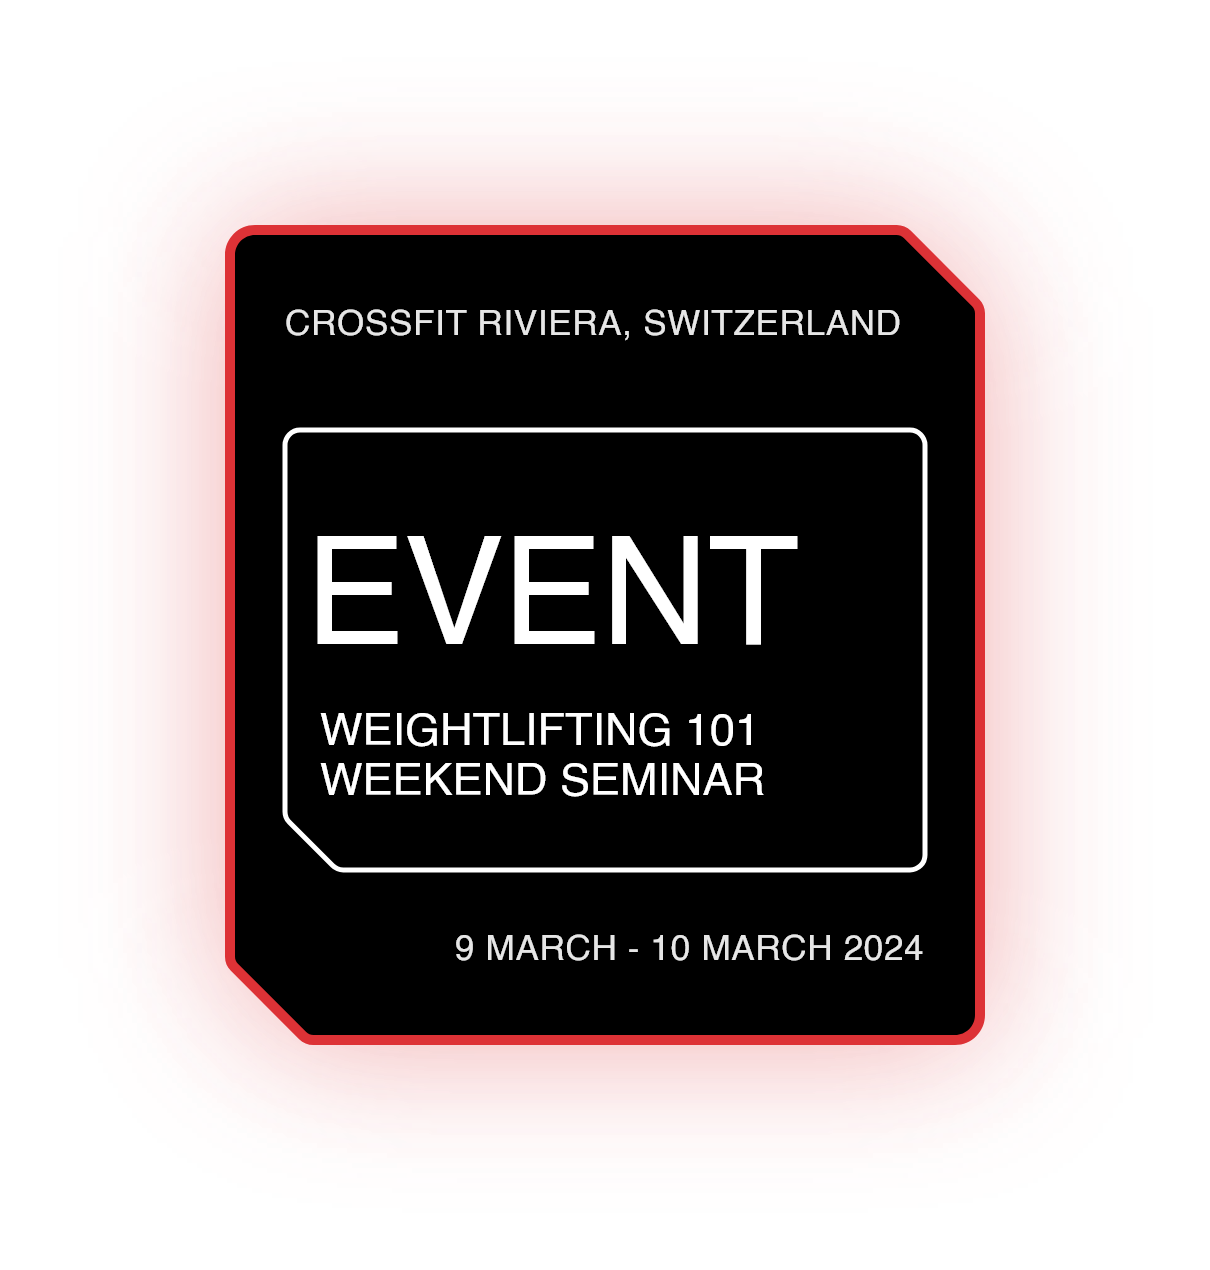 Weightlifting 101 Weekend Seminar - Puidoux, Switzerland